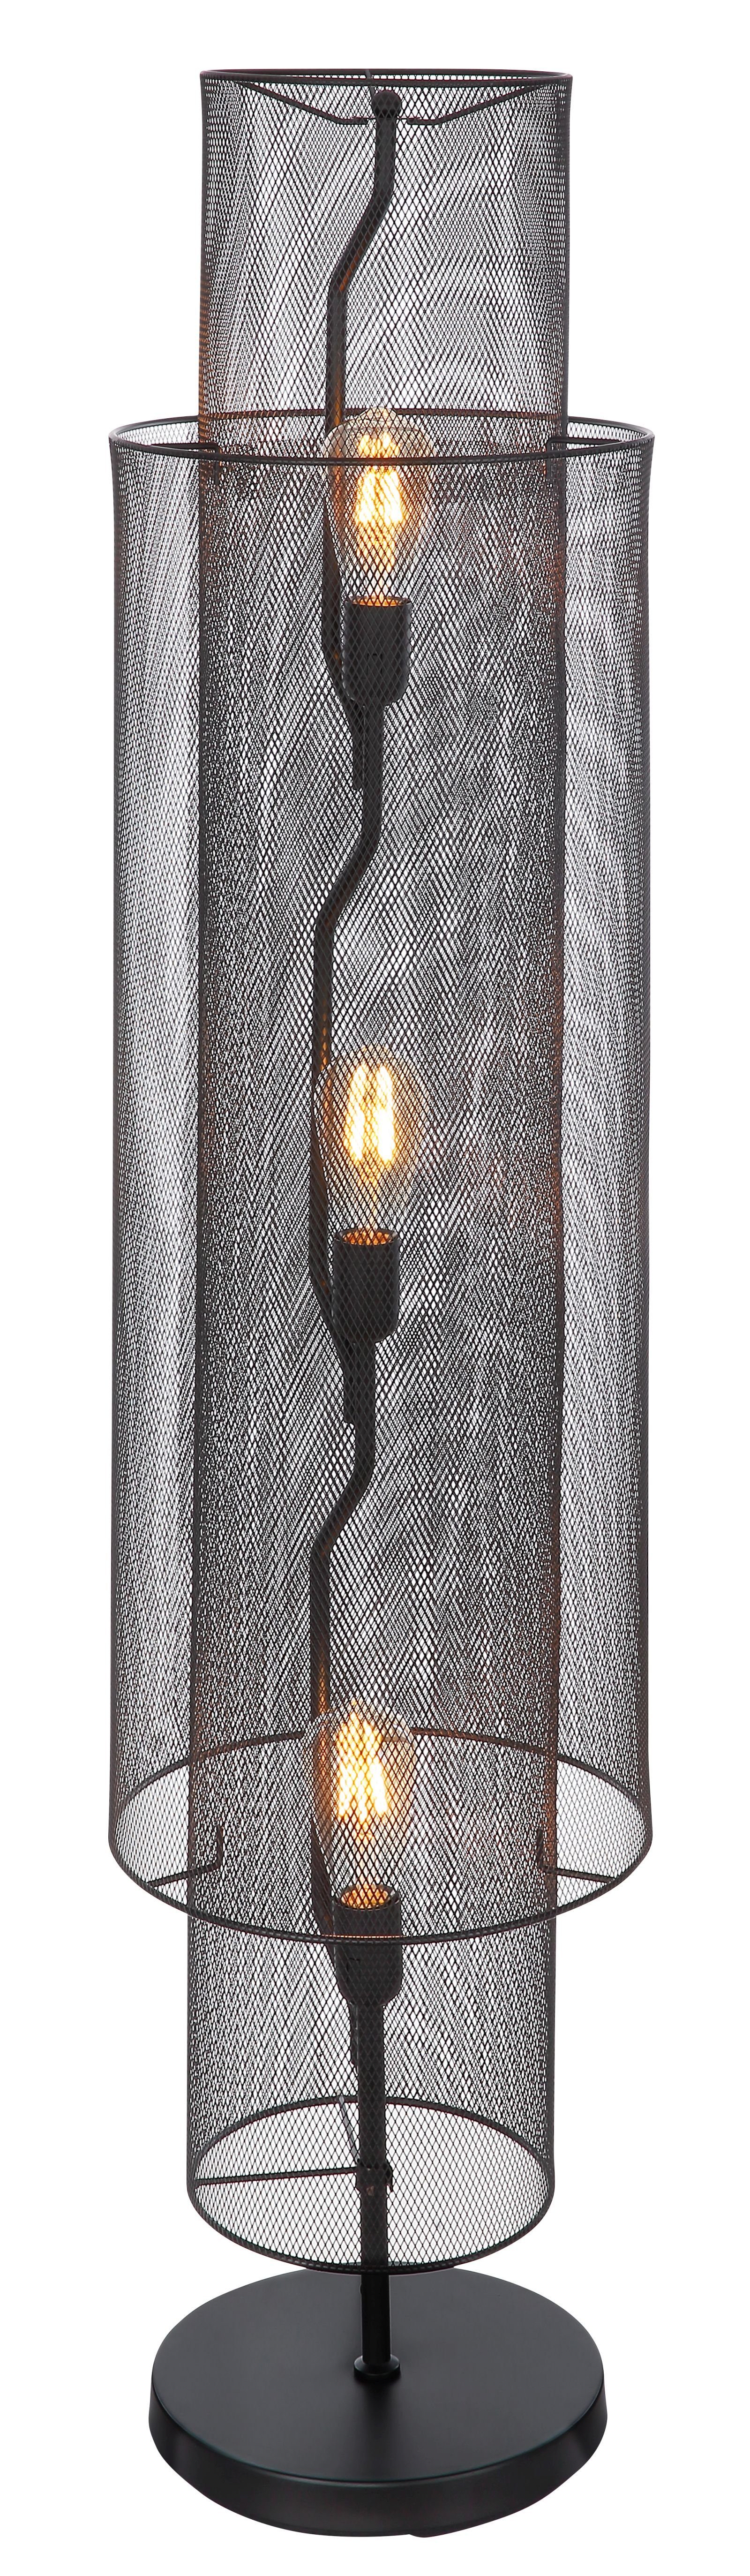 Stehlampe Stehlampe LEUCHTEN Schwarz Stehleuchte Globo GLOBO GLOBO Wohnzimmer 3 Flammig Industrie